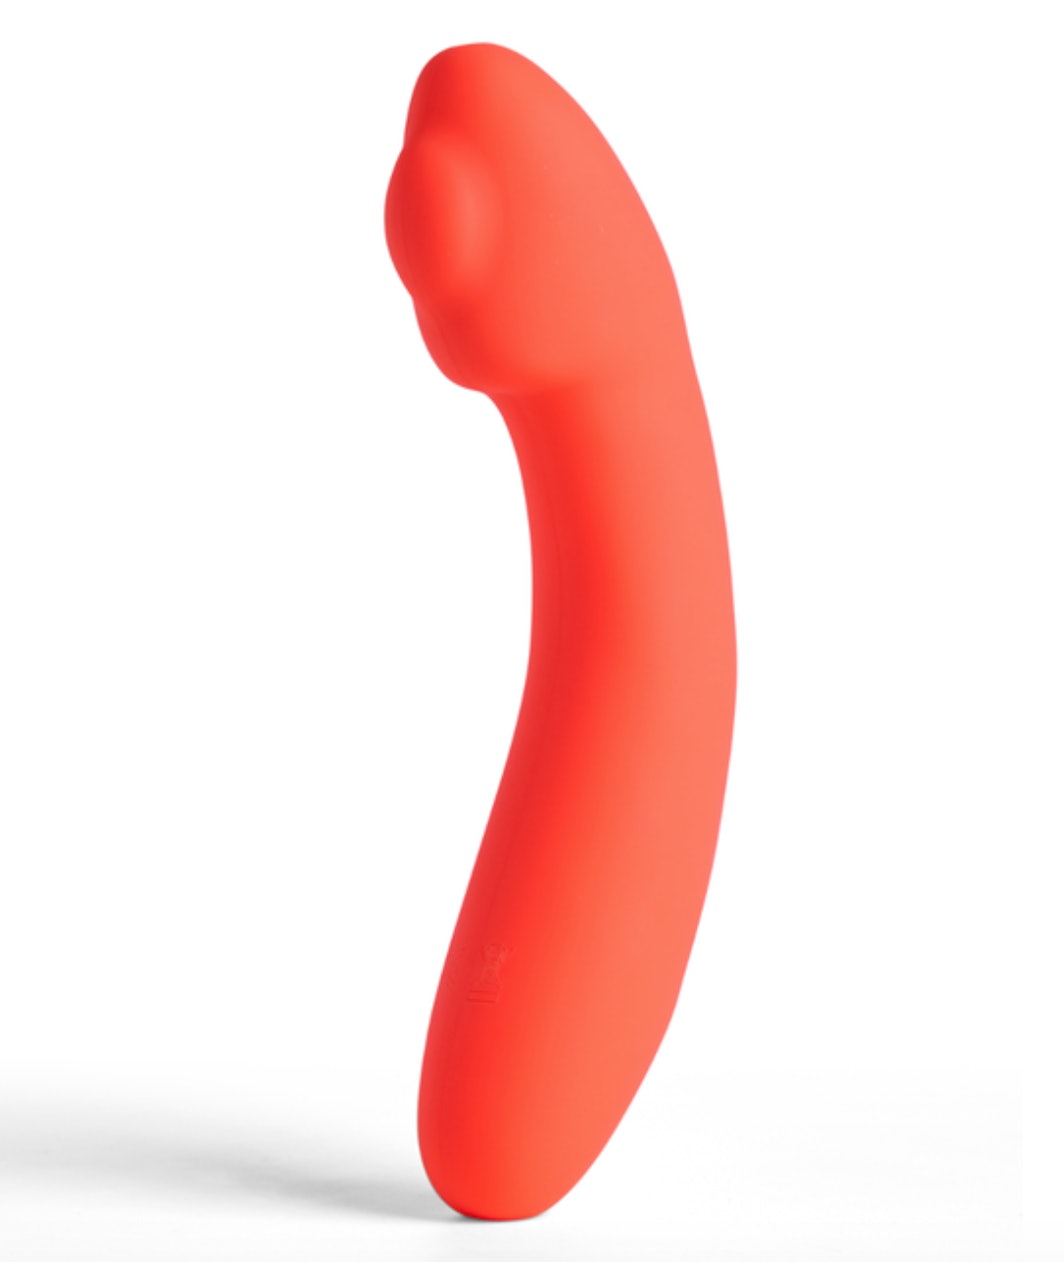 Caso você não saiba, existem brinquedos sexuais aquecidos